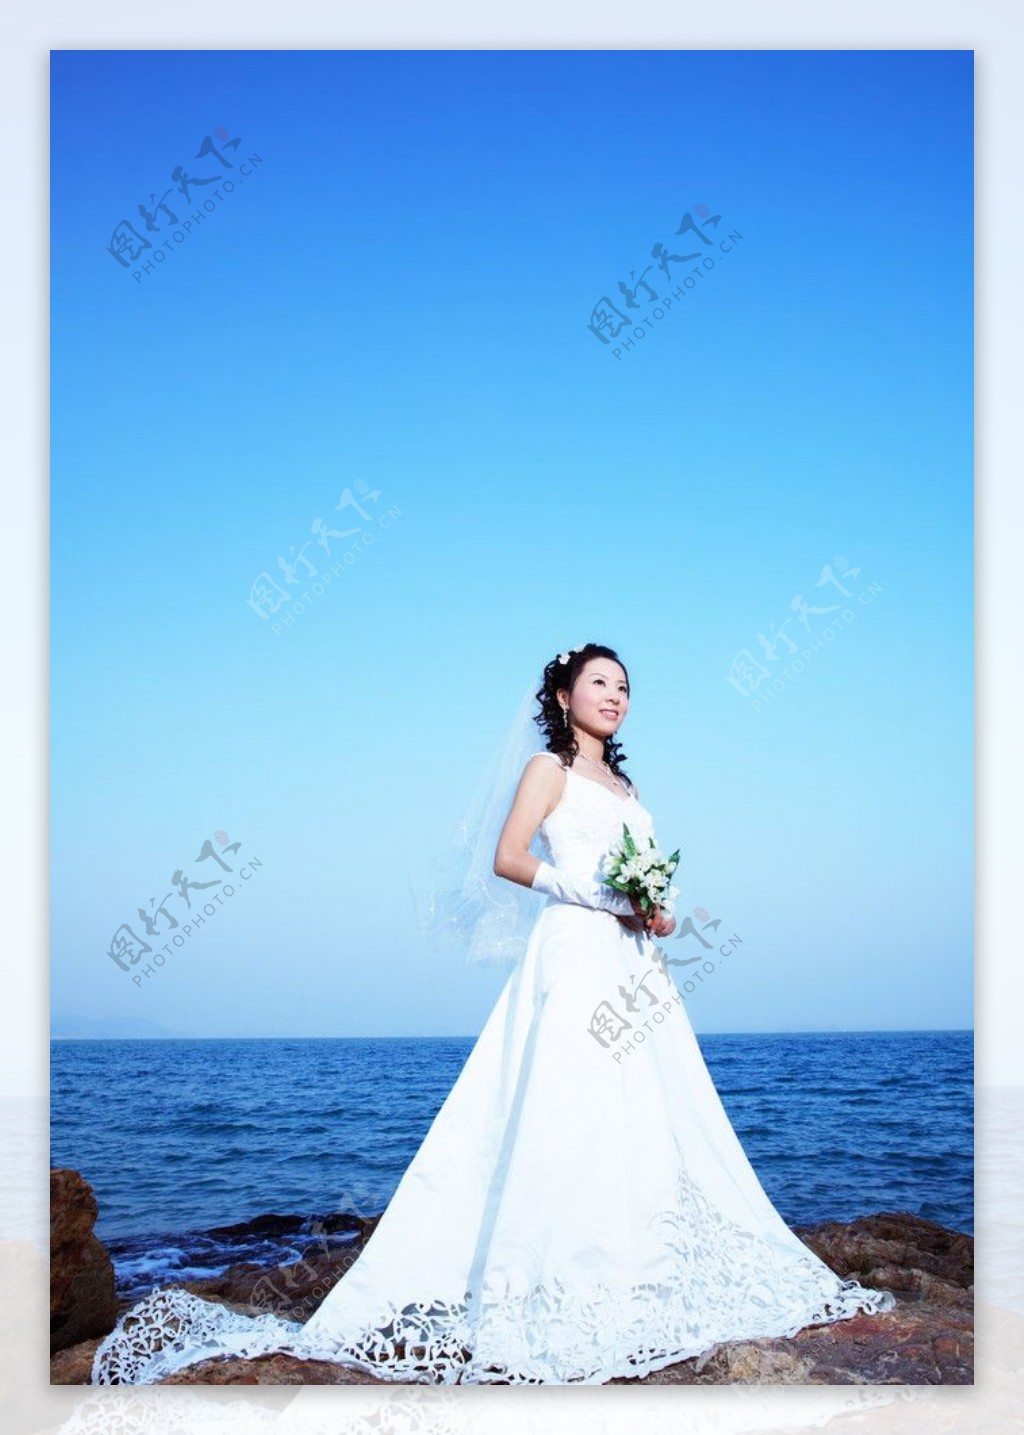 大海边手捧鲜花的新娘图片